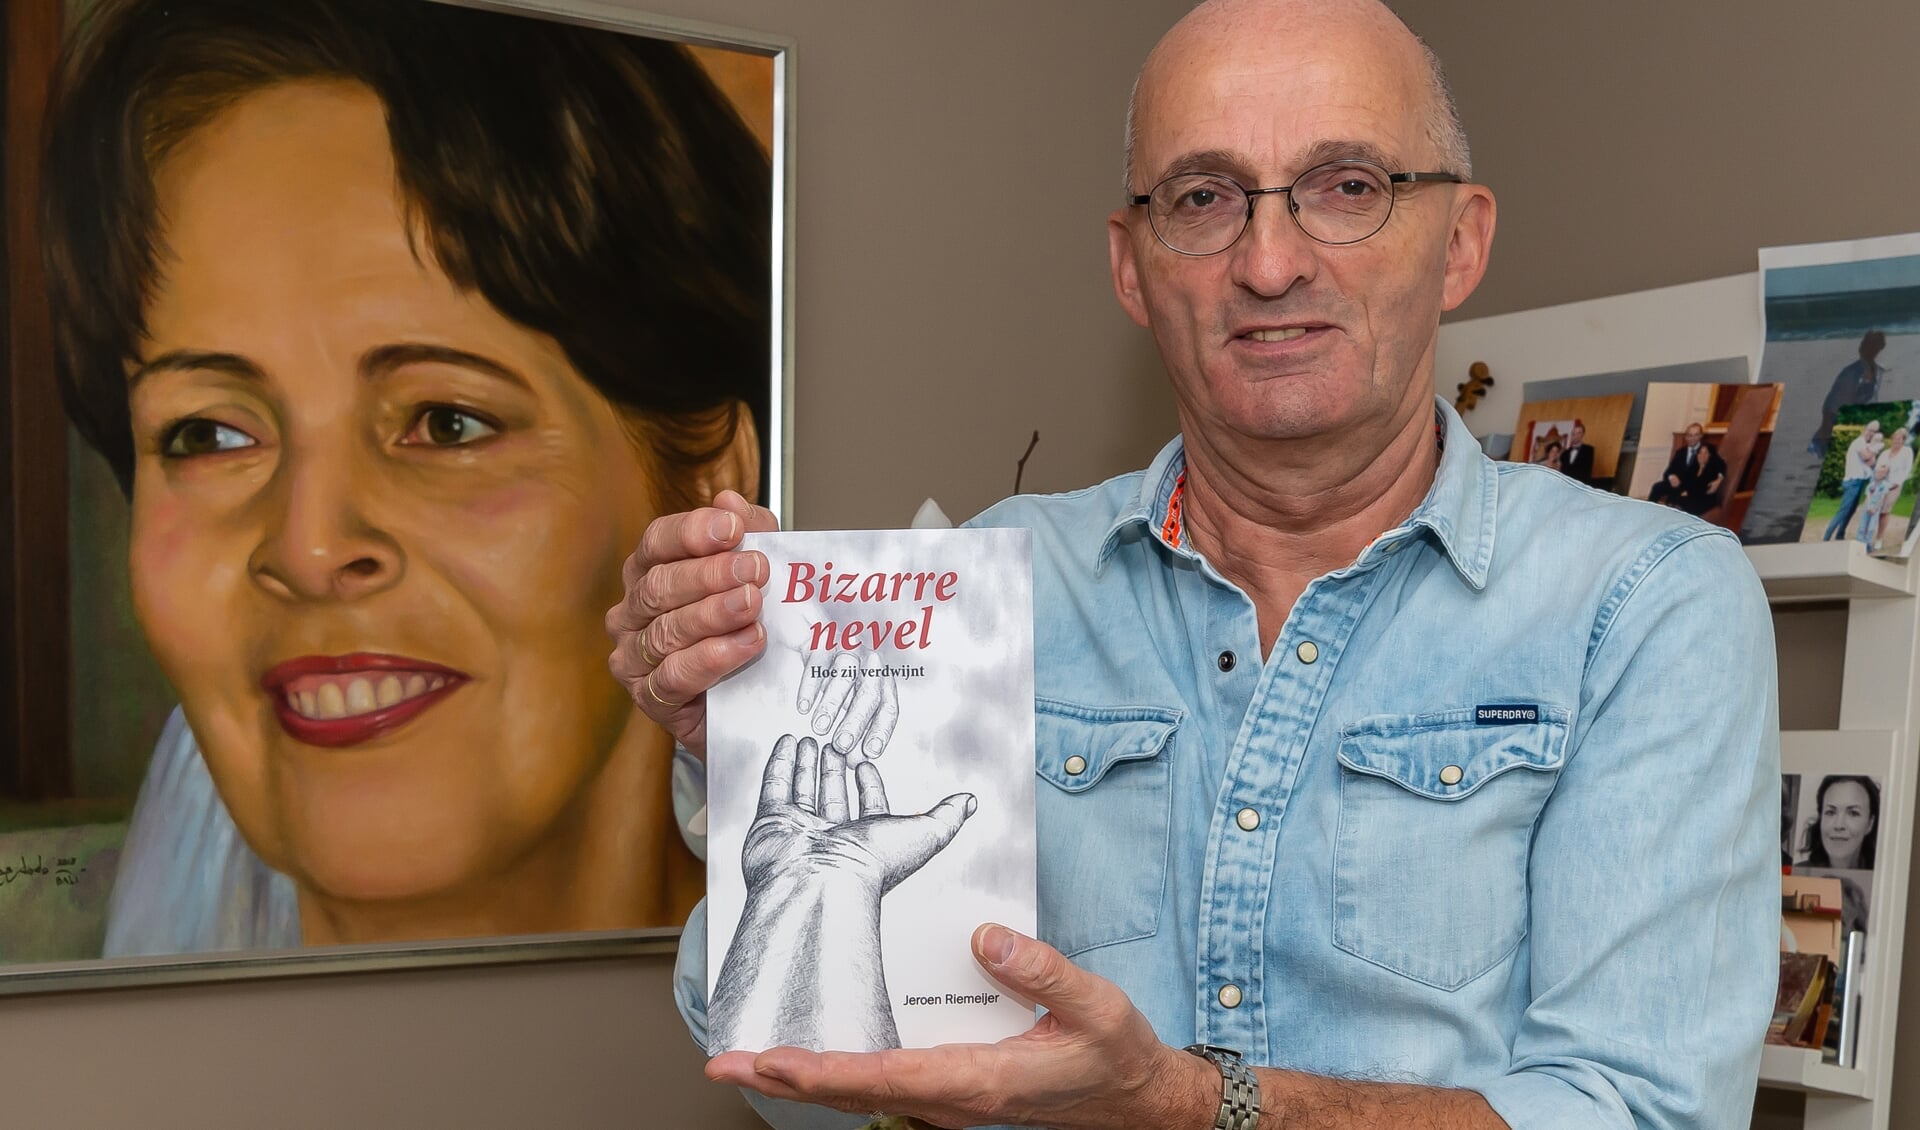 Jeroen Riemeijer met boek voor het portret van zijn zo geliefde Joke. Het in Maleisië gemaakte portret staat in de achterkamer van Jeroens huis.